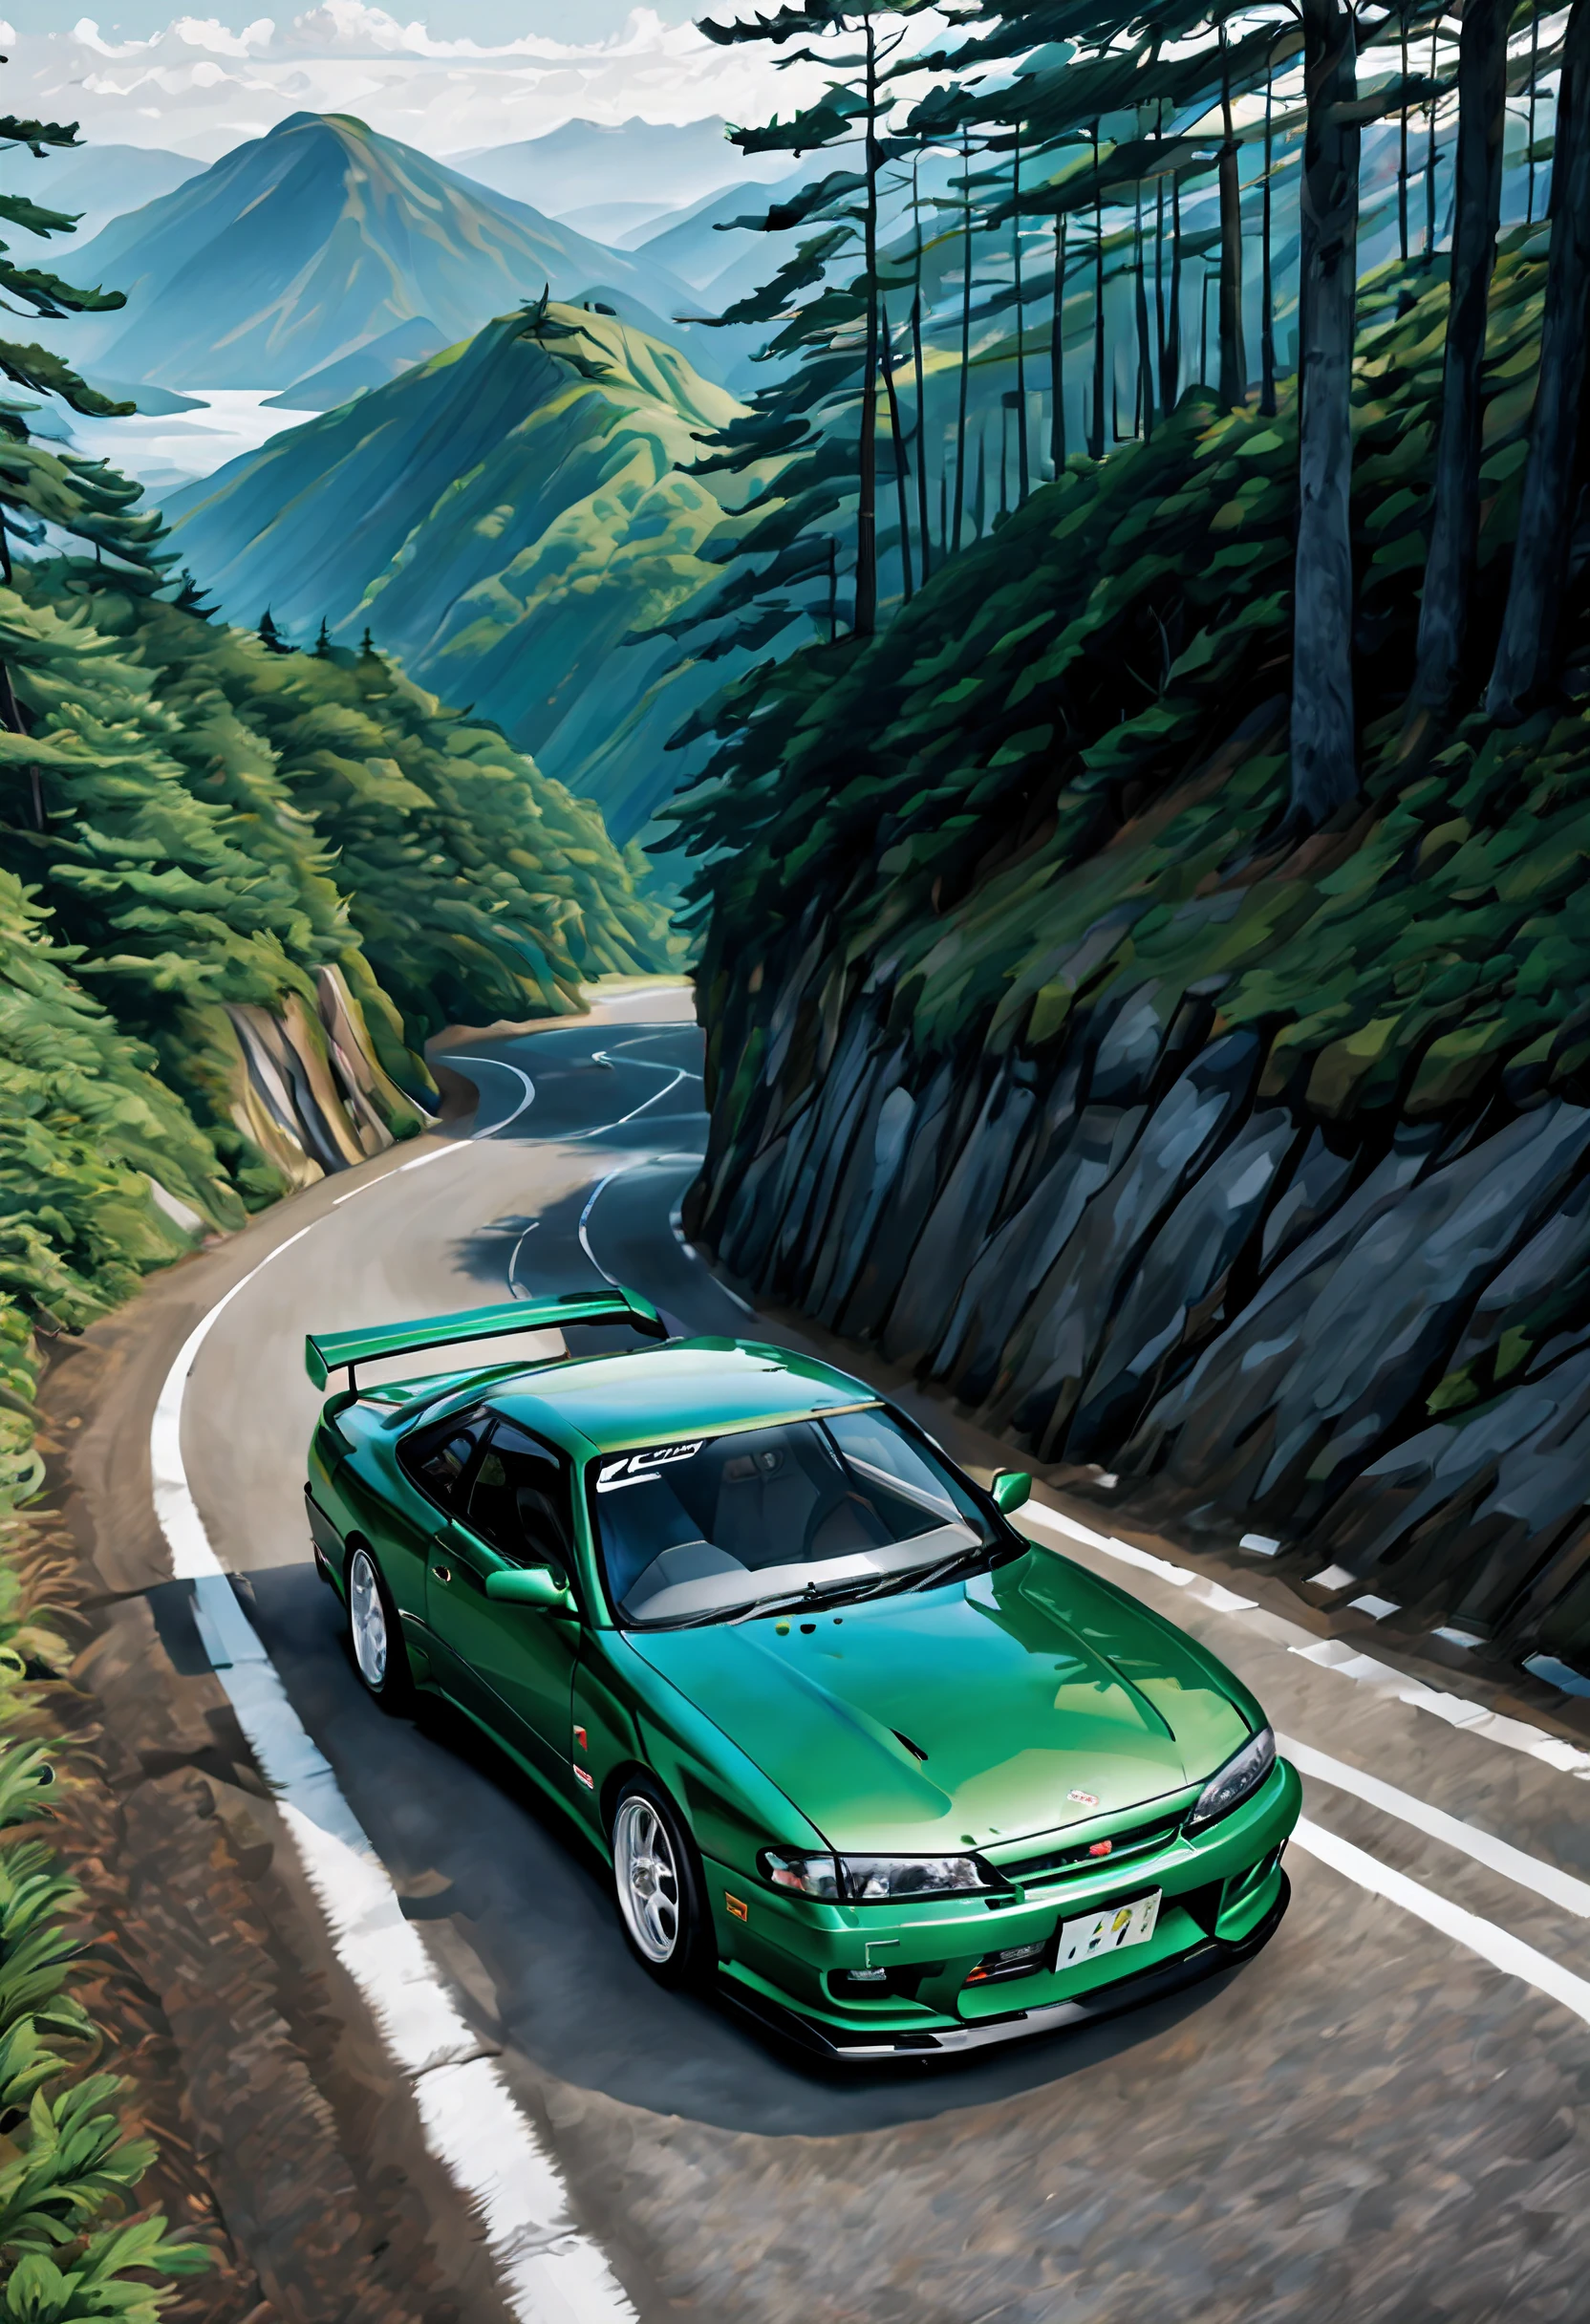 日本の山道の始まりにあるコバルトグリーンの日産シルビア S14 コウキ, 1998年モデルらしく細部を微妙に変更して峠に向けて準備完了